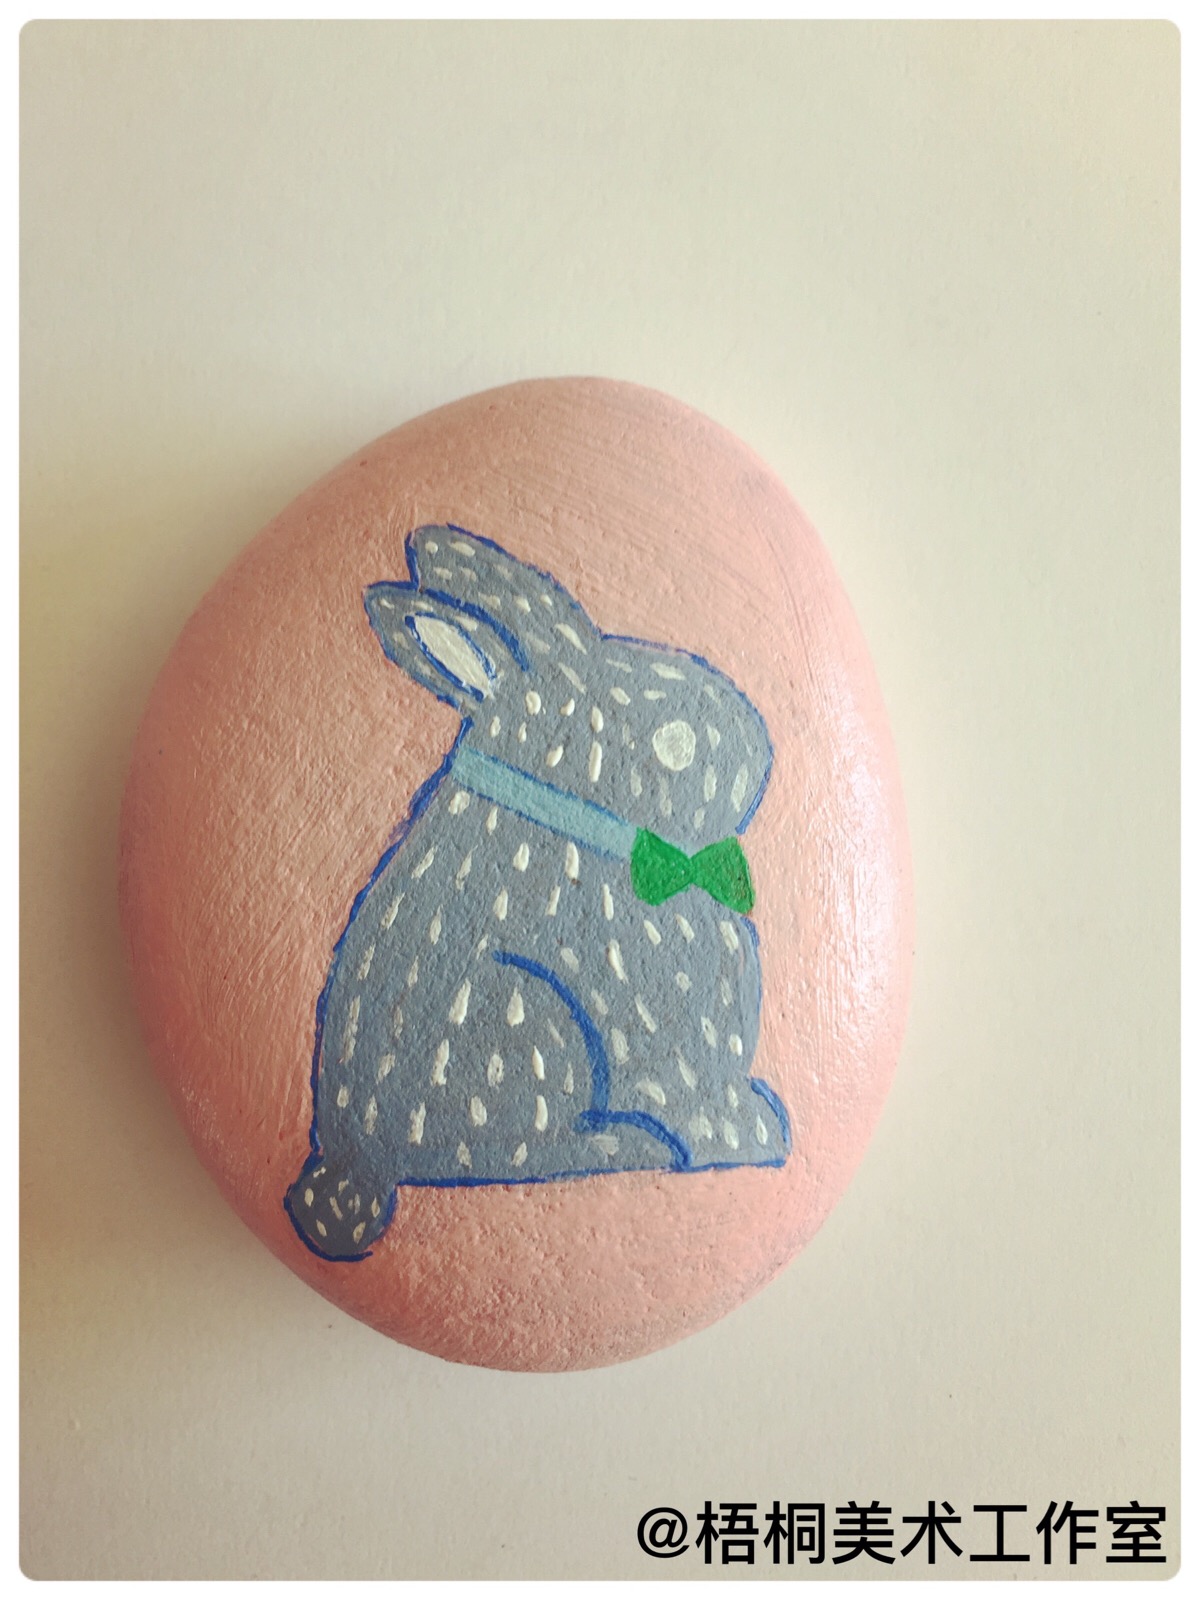 可爱的小兔子丨石头画